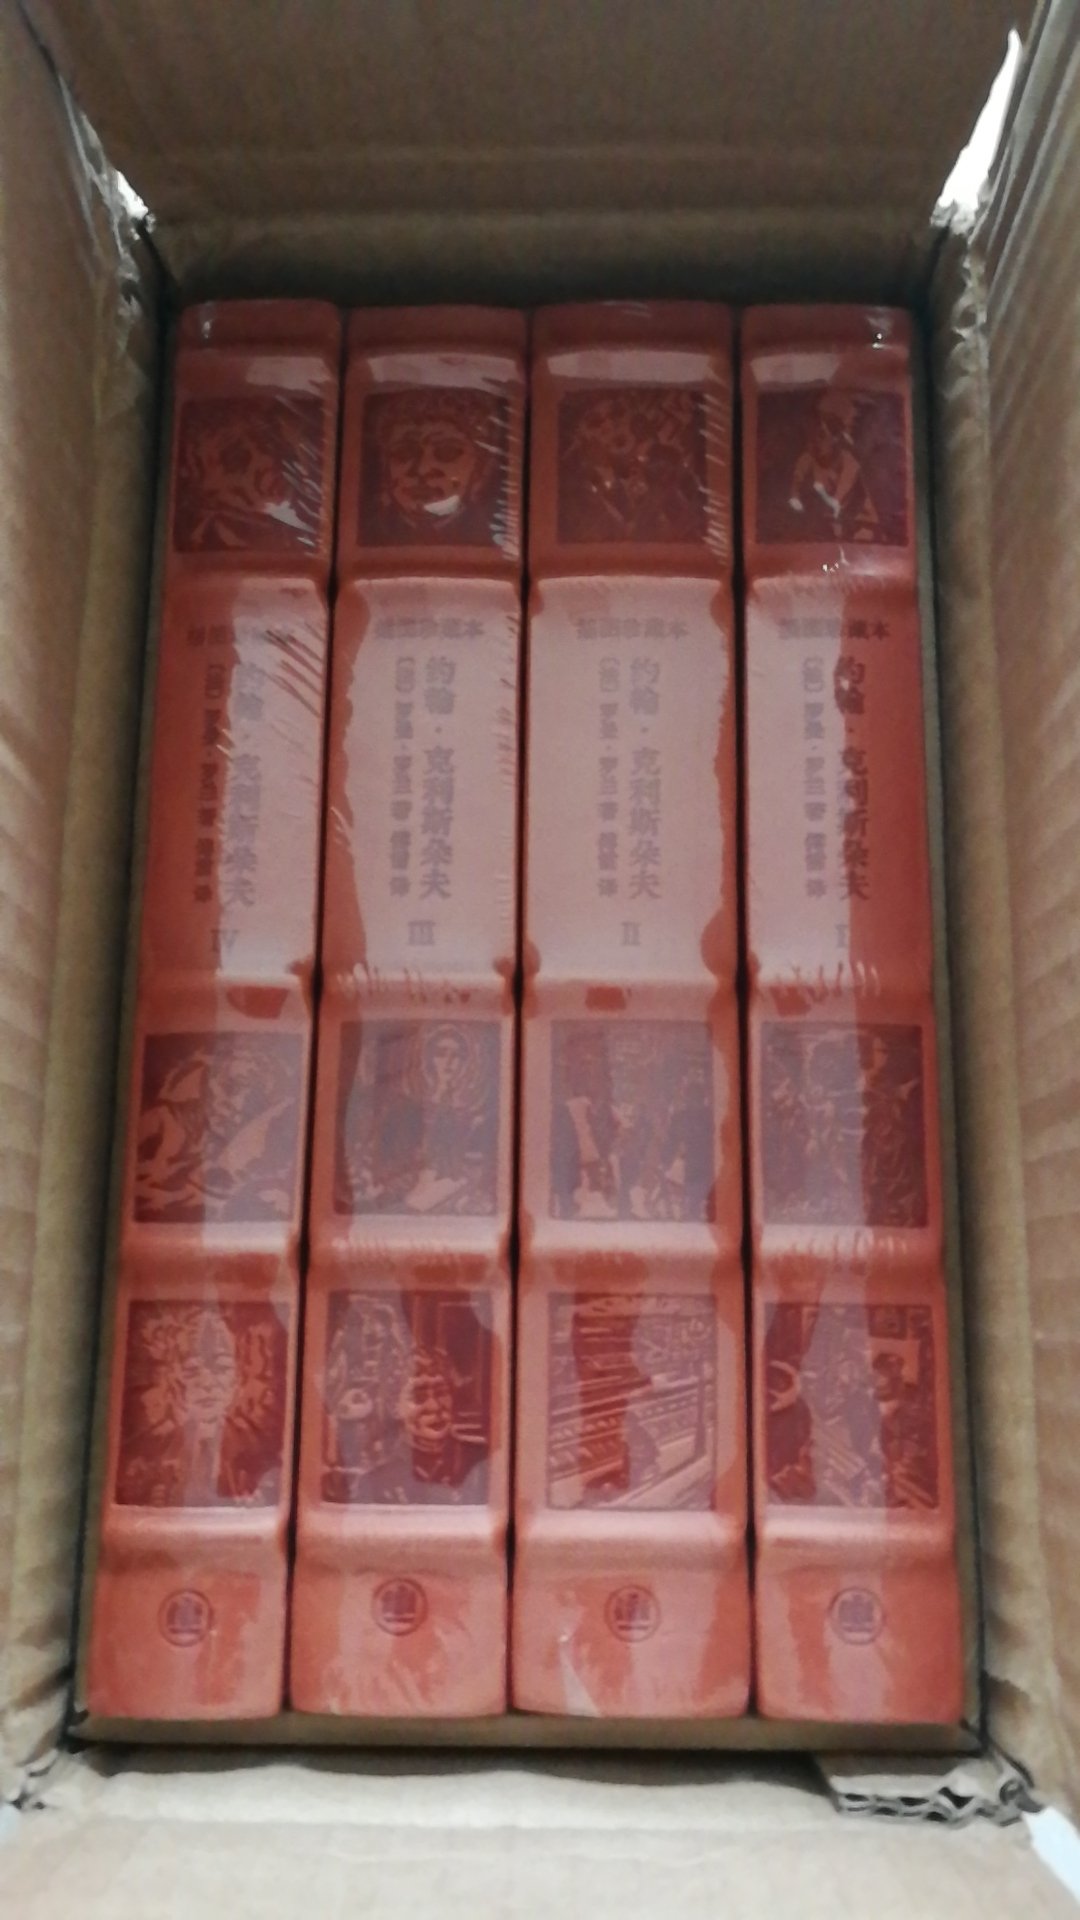 上海译文出版社推出的罗曼罗兰作品《约翰克里斯朵夫》，傅雷译本，书为仿皮面精装16开，书脊锁线纸质优良，排版印刷得体大方，活动期间价格优惠，送货速度也很快，非常满意。